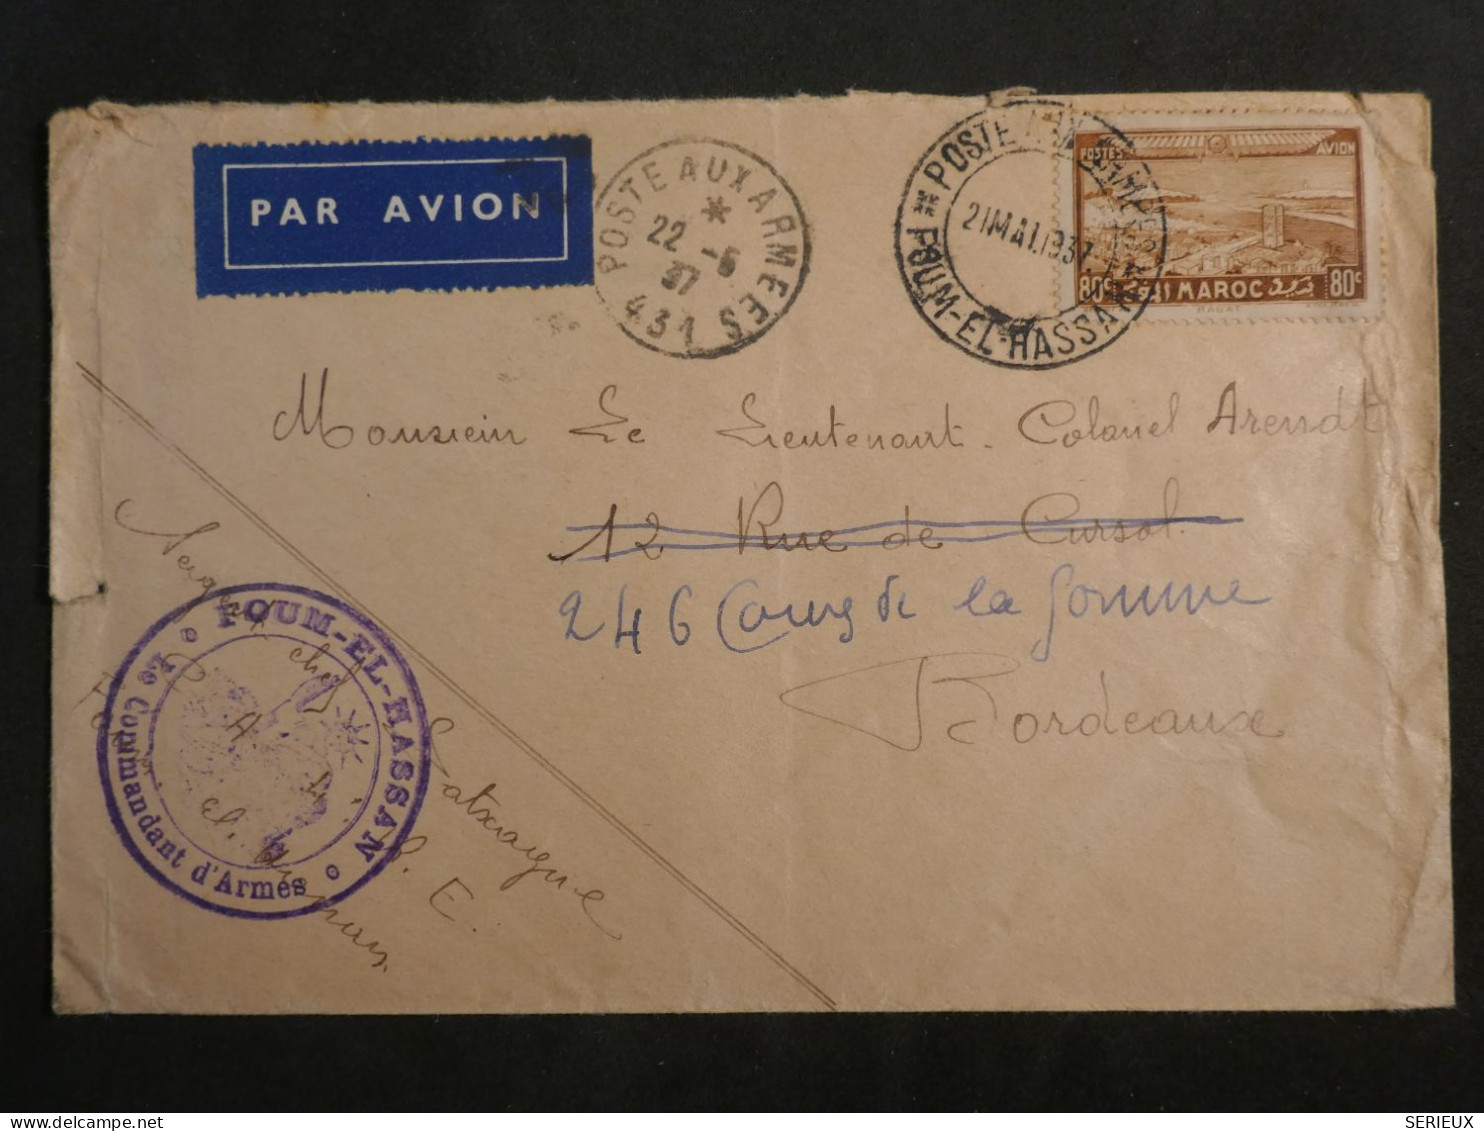 DL0  MAROC  LETTRE RR  1937  FOUM EL HASSAN  A BORDEAUX FRANCE + +AFF.  INTERESSANT+ + - Covers & Documents